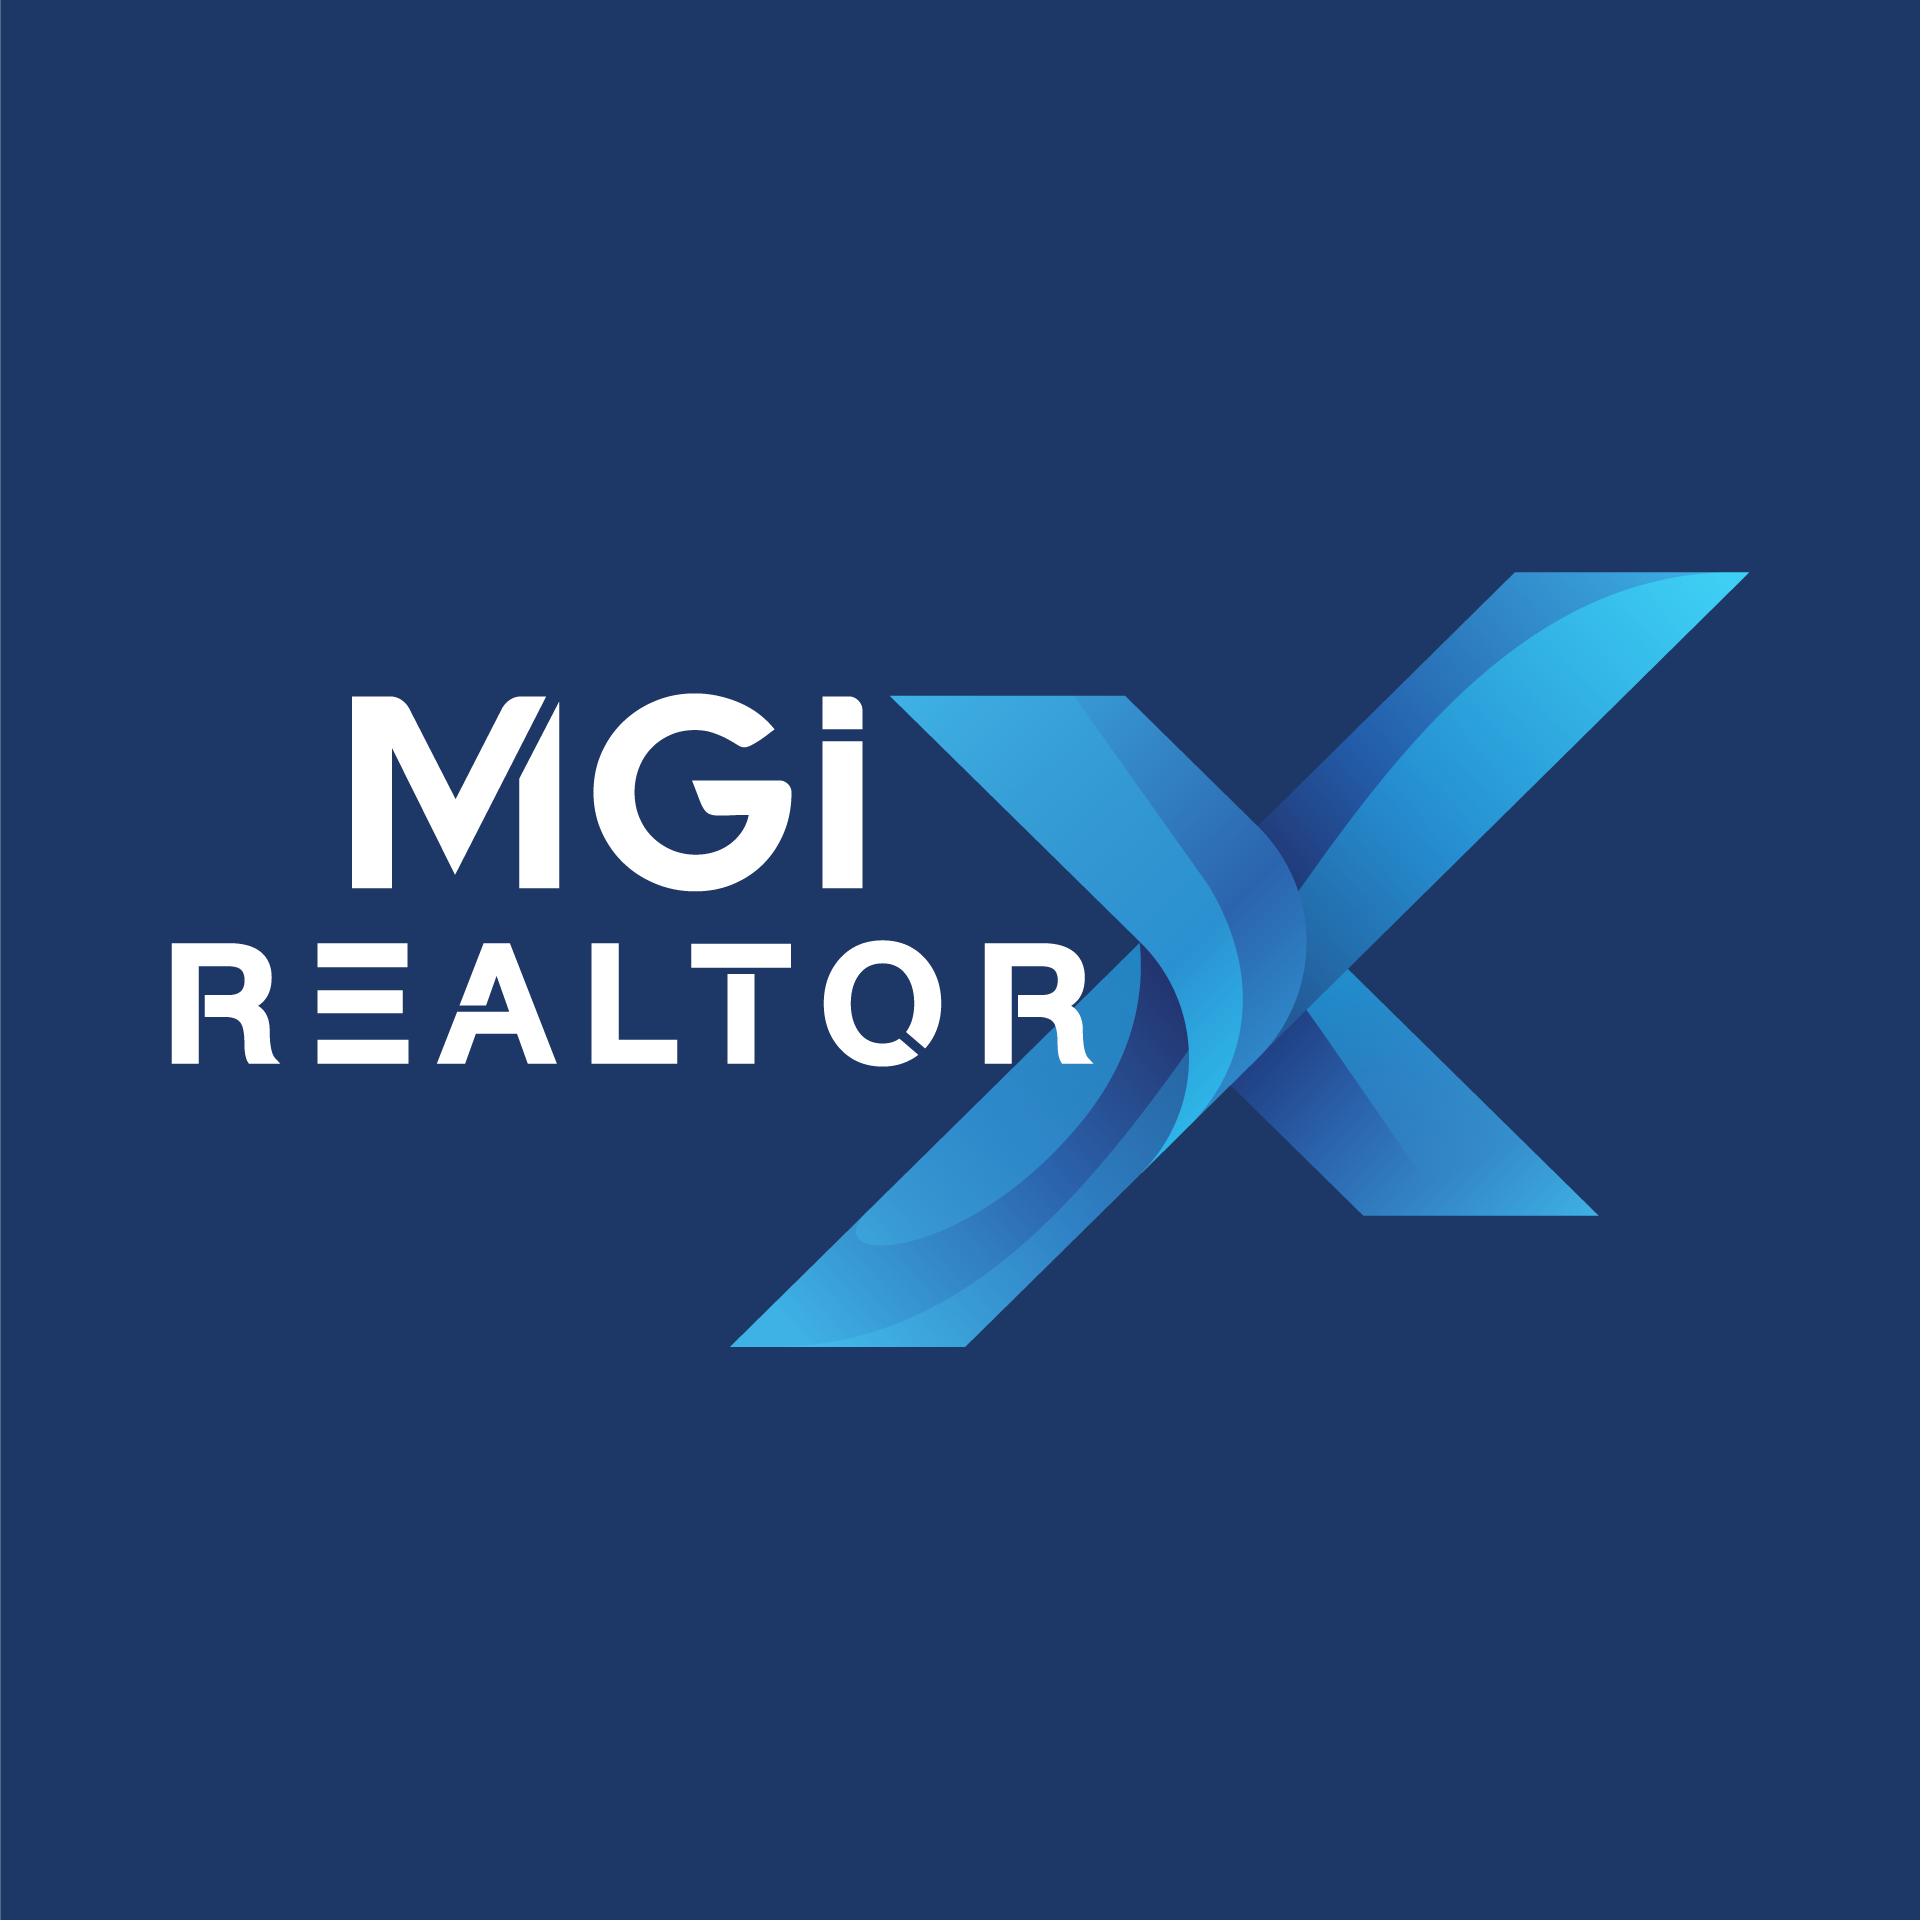 Ra mắt website chuỗi sự kiện MGI RealtorX Tour